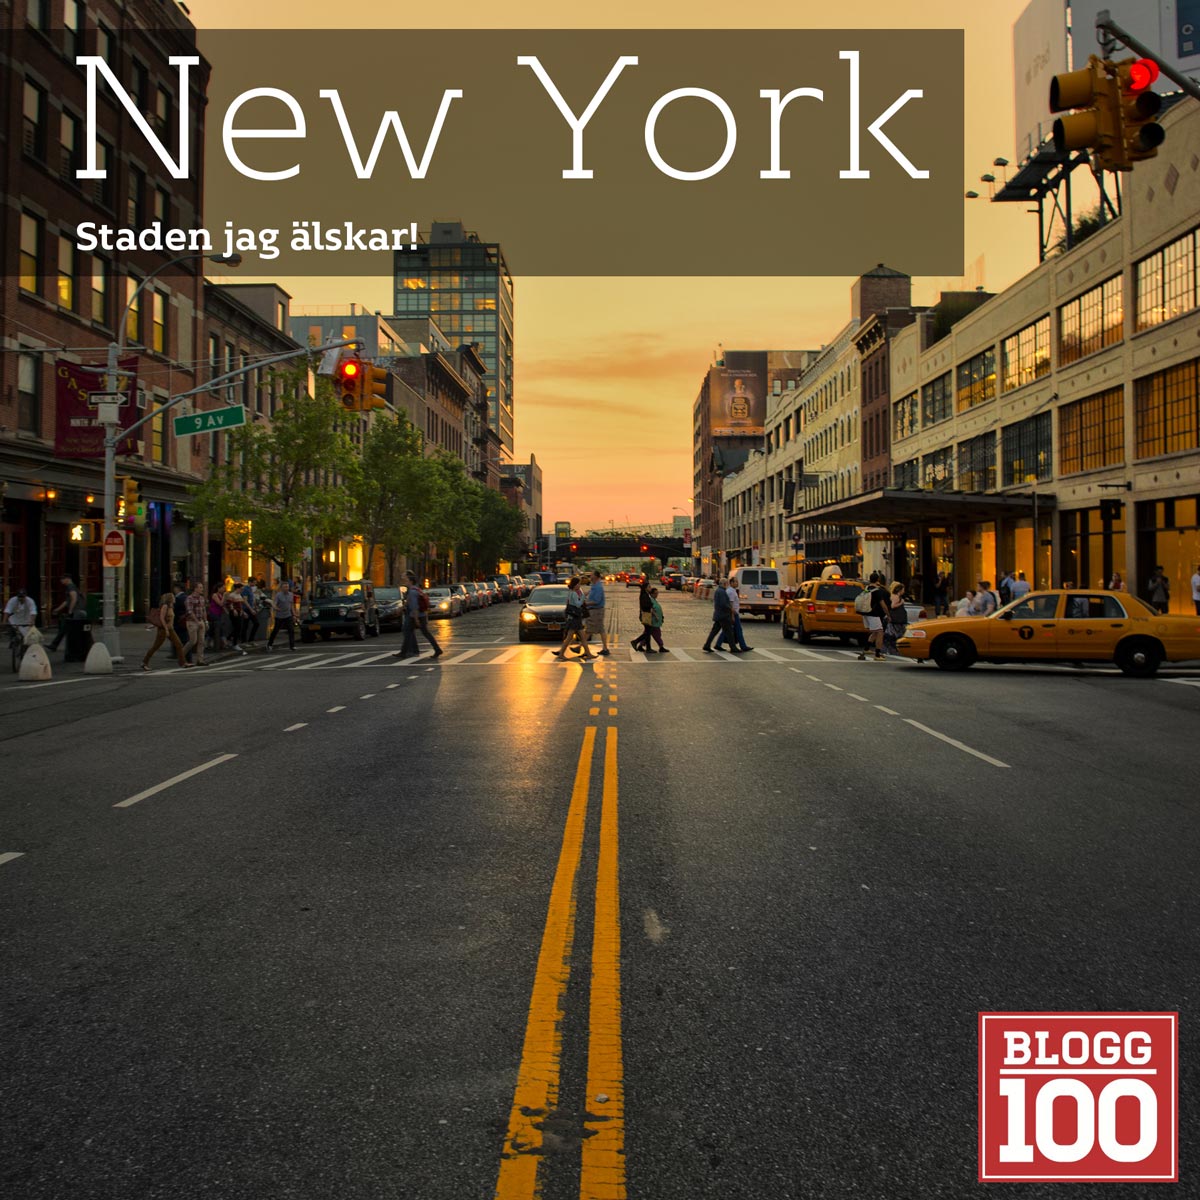 New York, lite olika små tips #blogg100 #FB